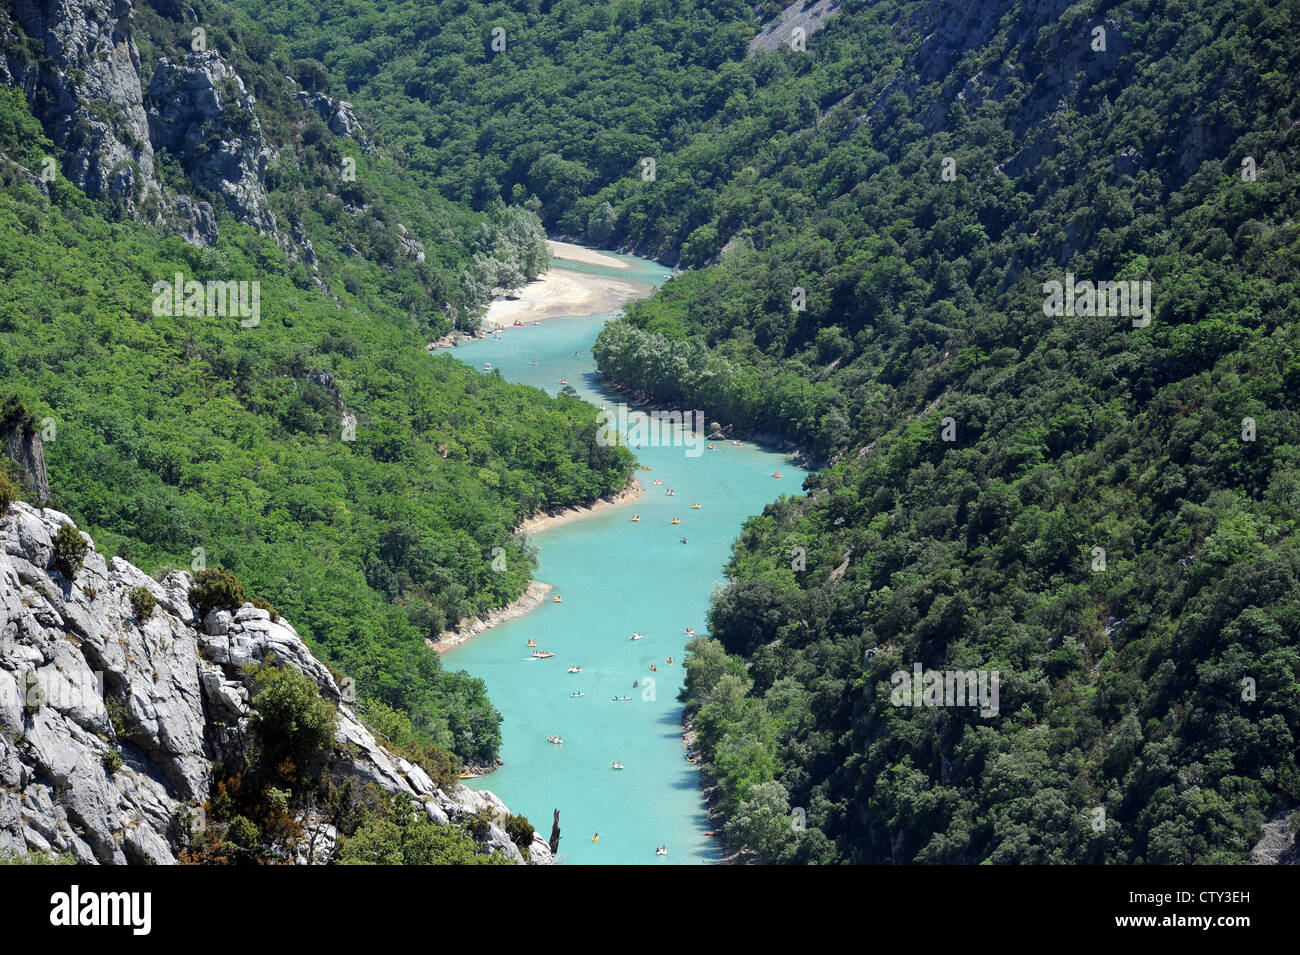 Sur le pittoresque Grand canyon des Gorges du Verdon, en Provence, dans le sud de la France. Banque D'Images